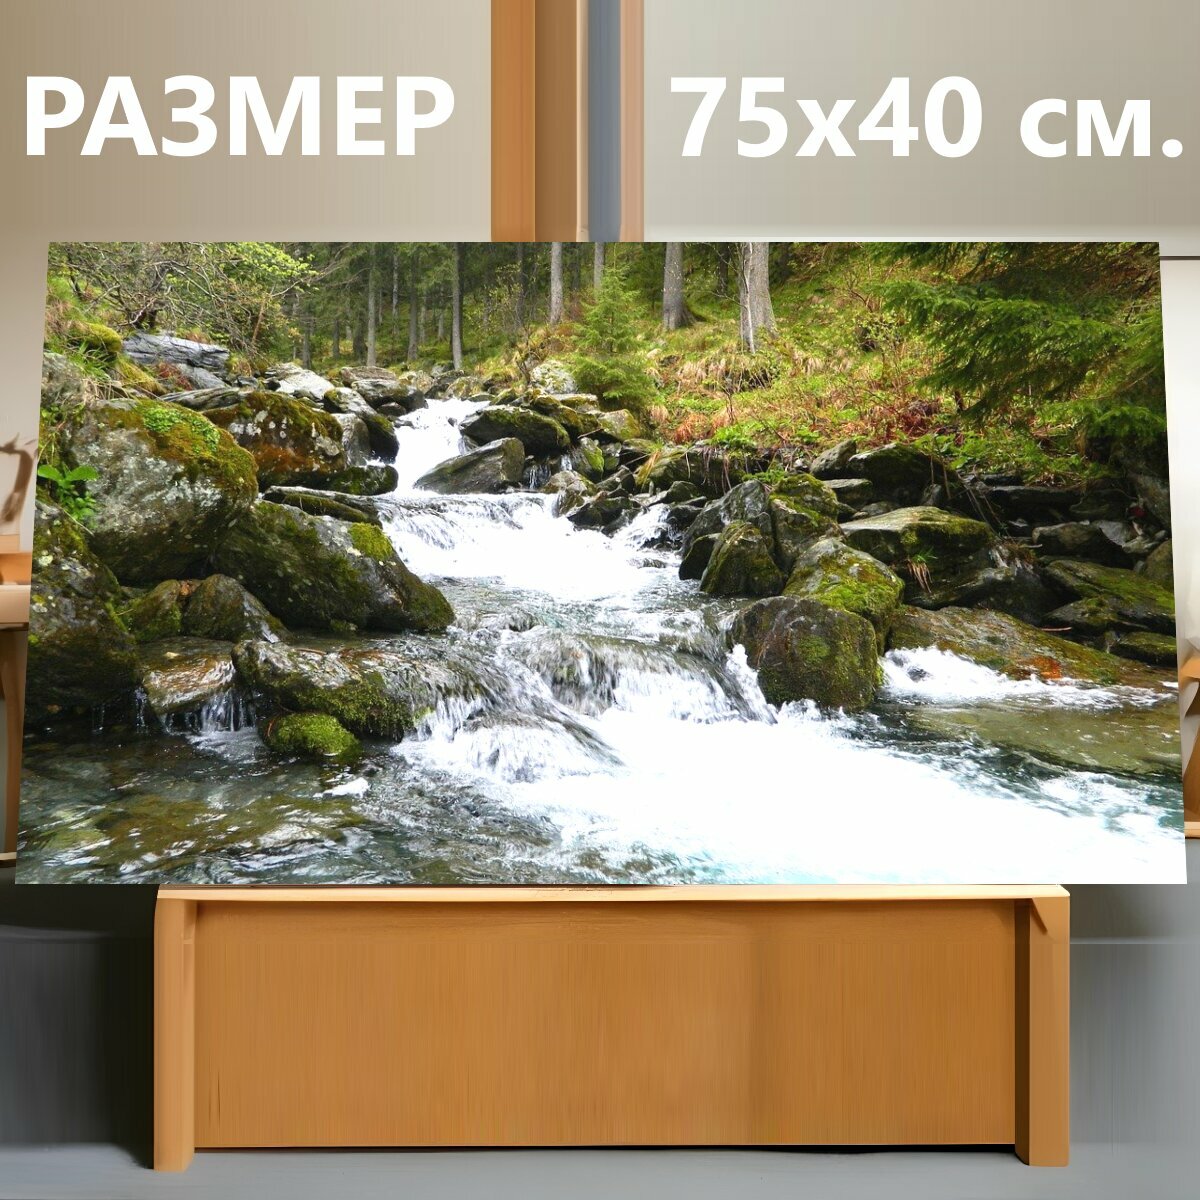 Картина на холсте "Речка, горная река, природа" на подрамнике 75х40 см. для интерьера